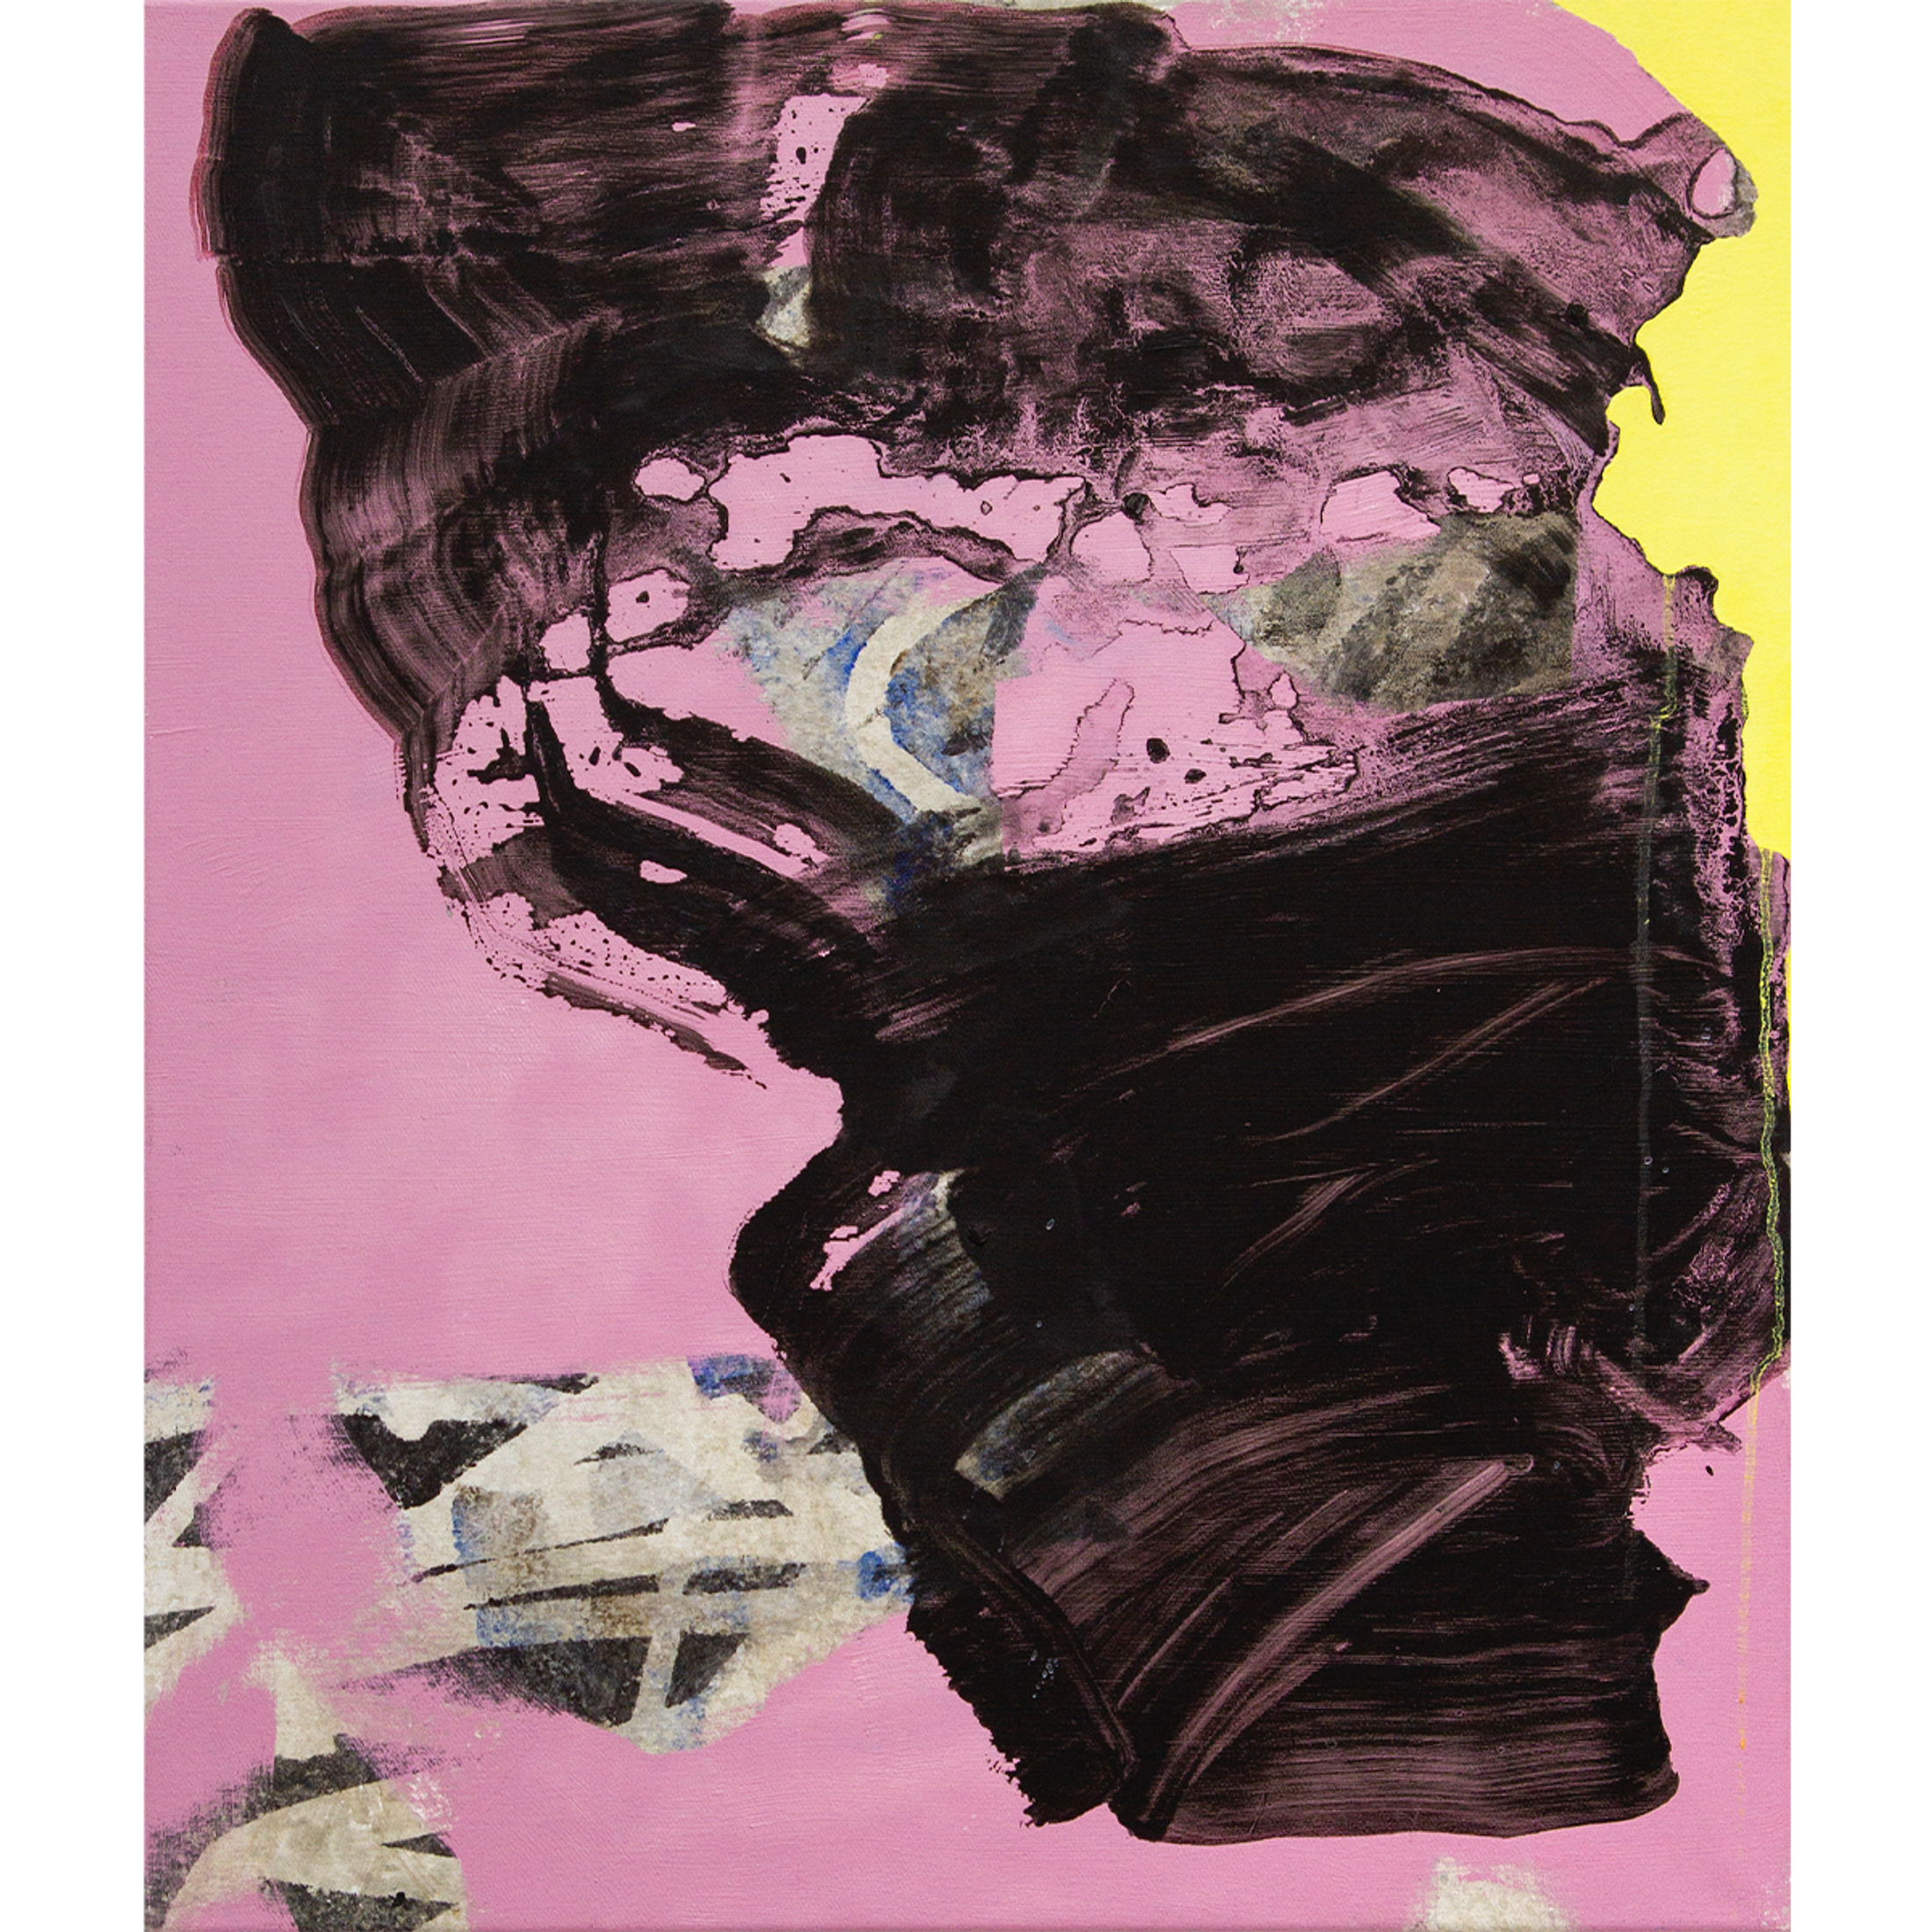 Eine schwarze abstrakte Form auf einem pinken Hintergrund.